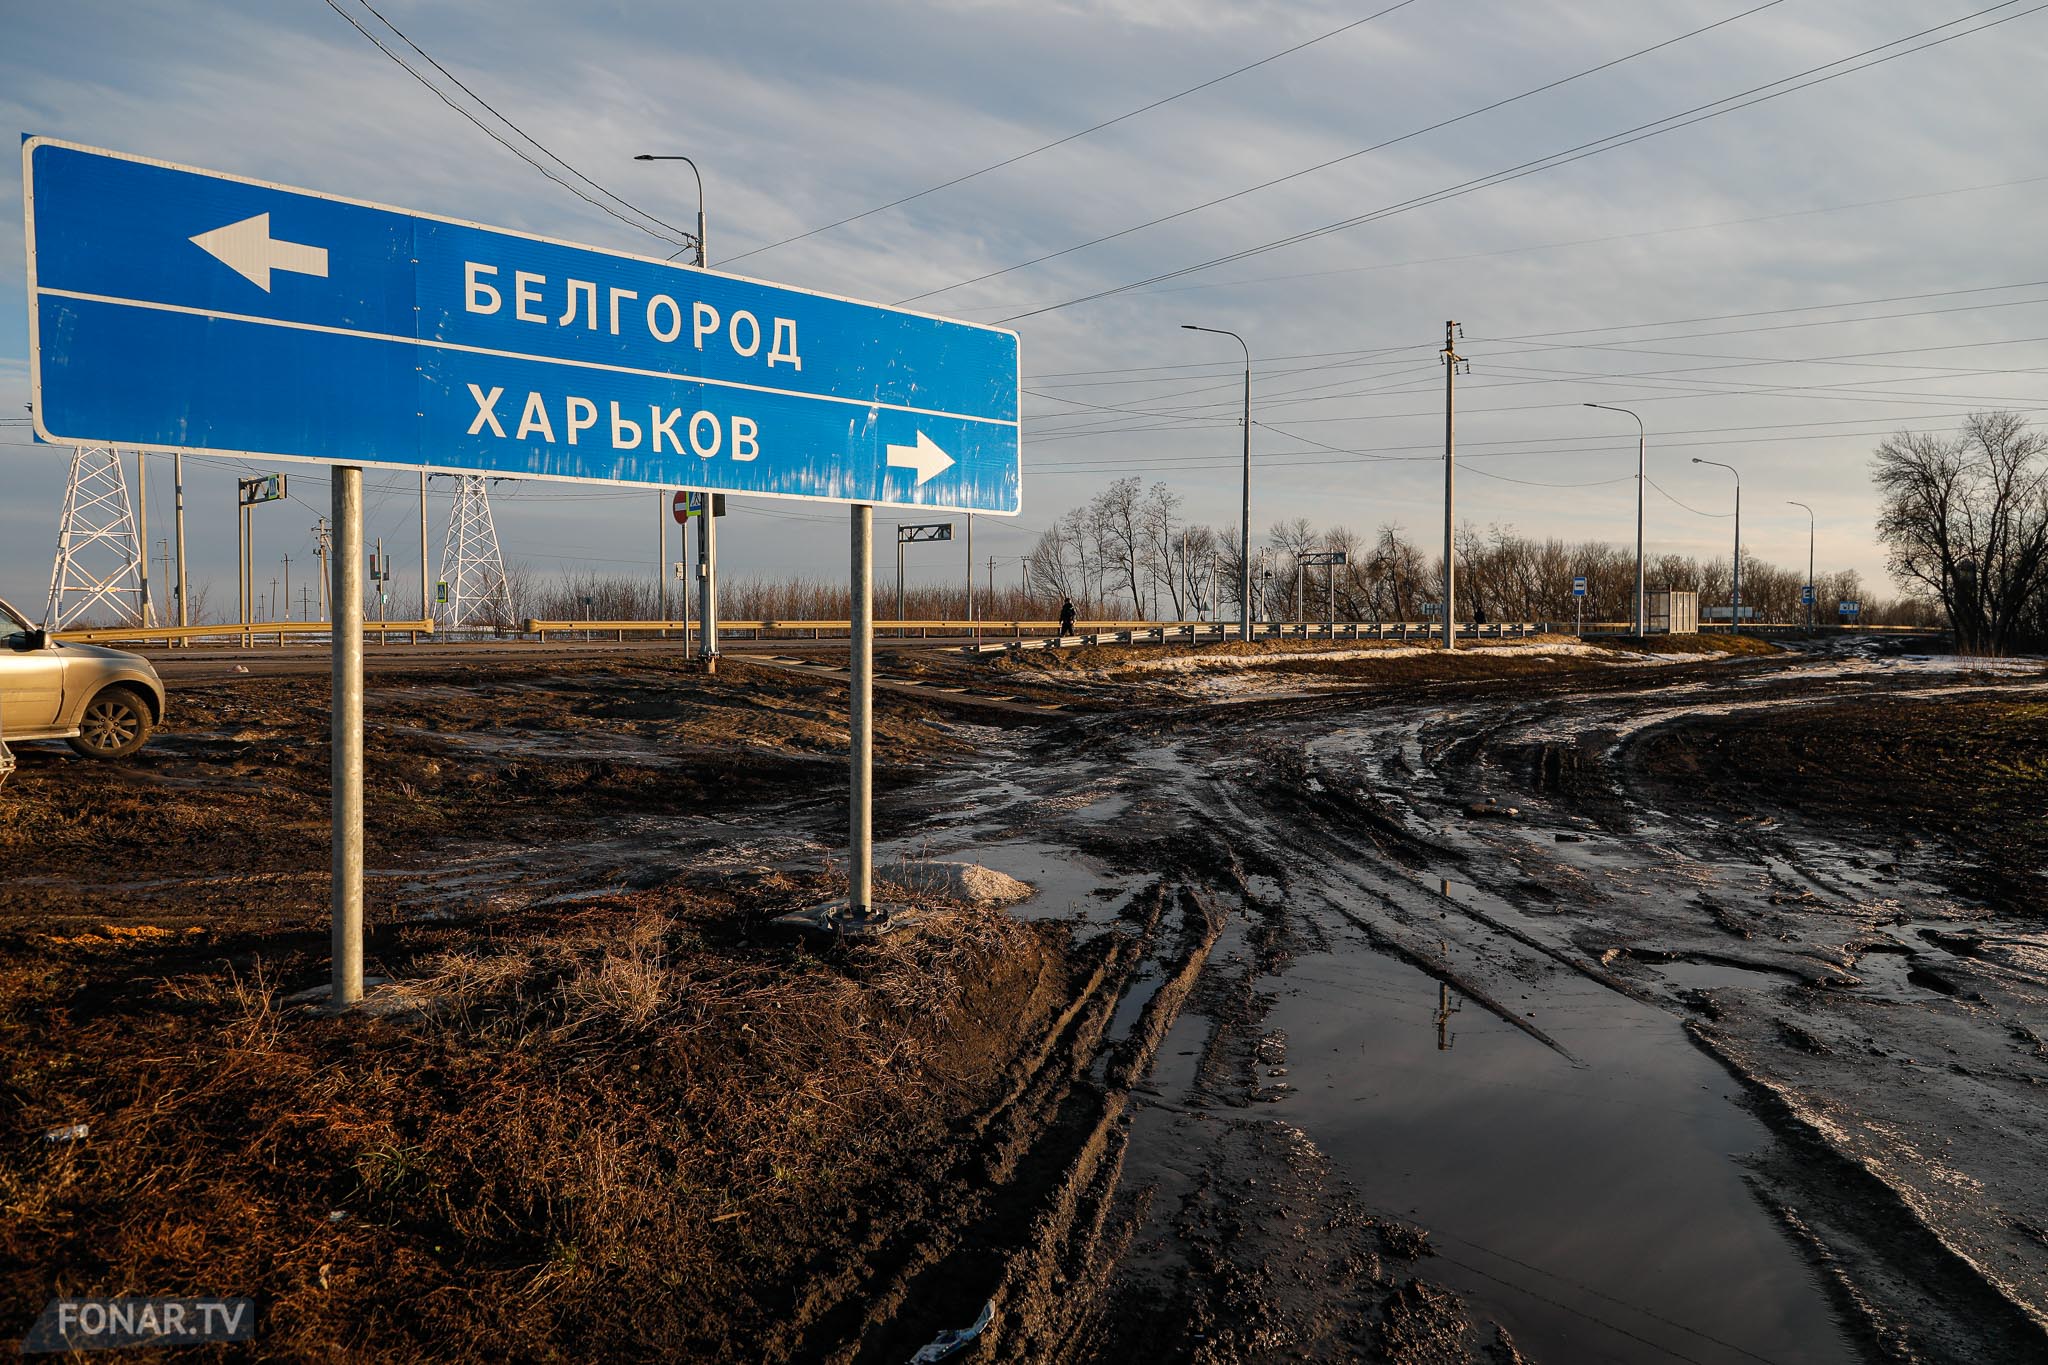 Поселки белгородской области на границе с украиной